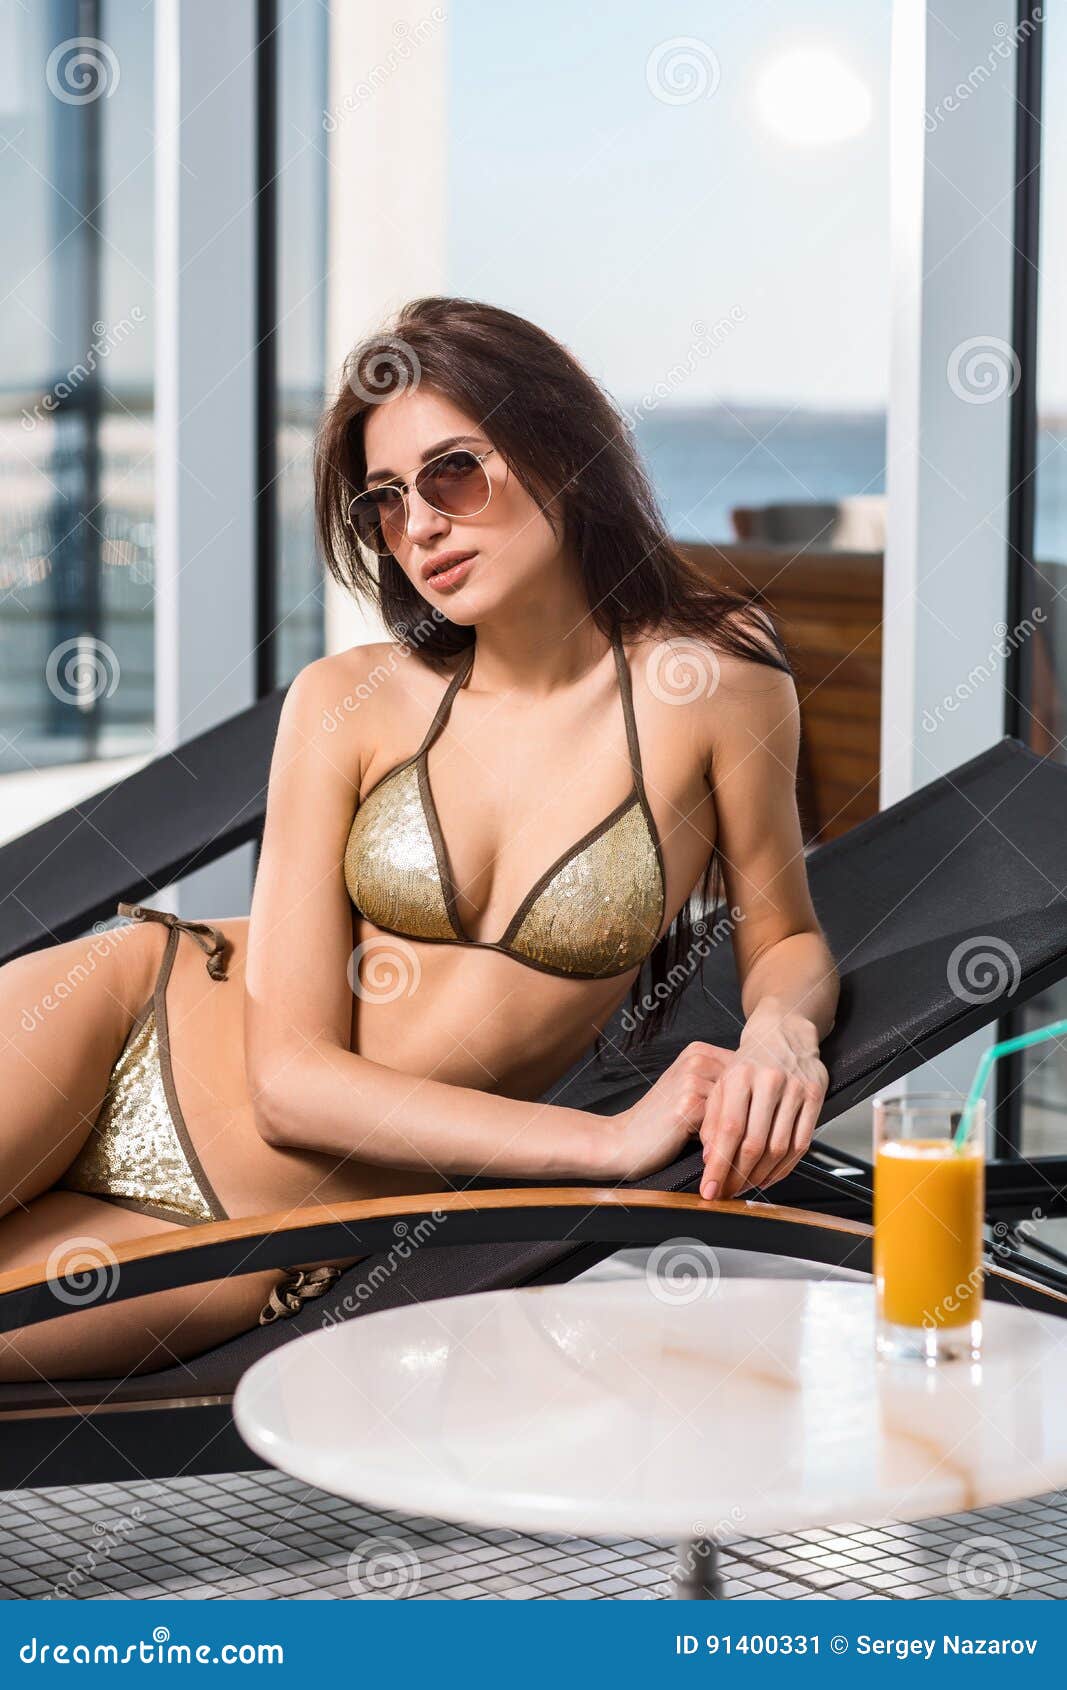 женщина воды спы здоровья ноги внимательности тела Женщина с совершенным телом в бикини лежа на deckchair бассейном на гостинице курорта курорта